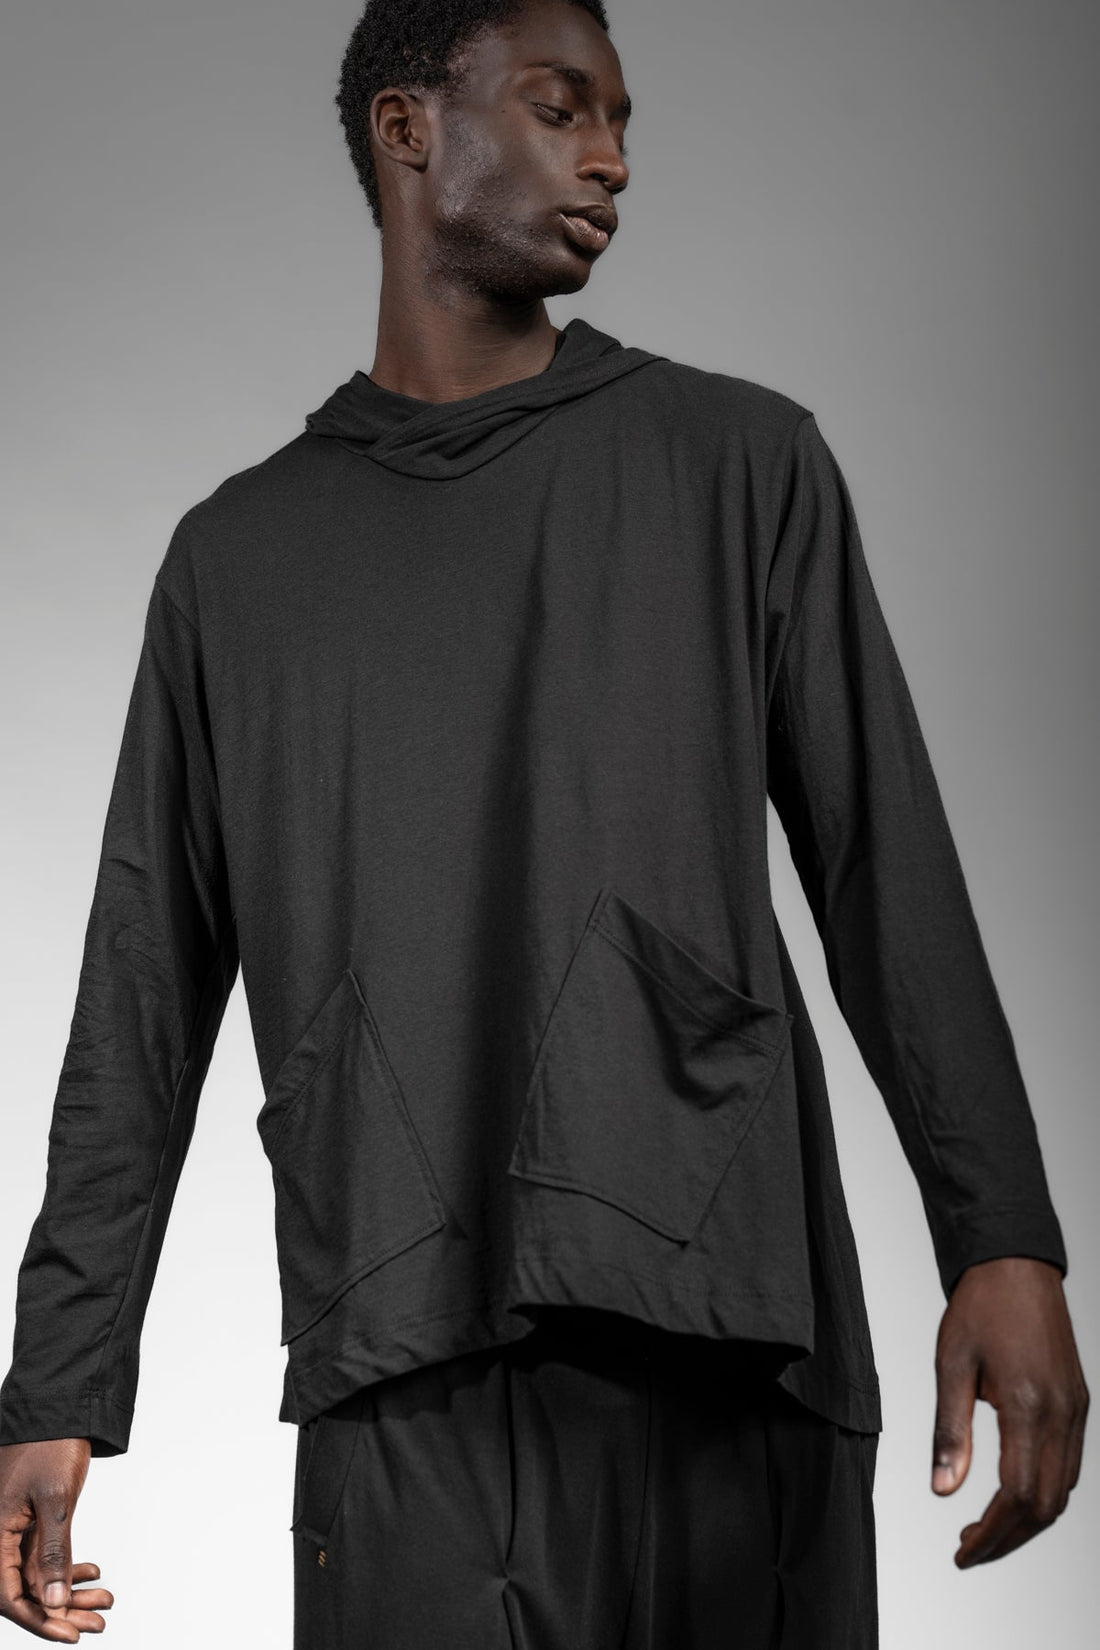 eigensinnig wien | Breed | Schwarzes Designer Hooded Sweatshirt aus Baumwolle